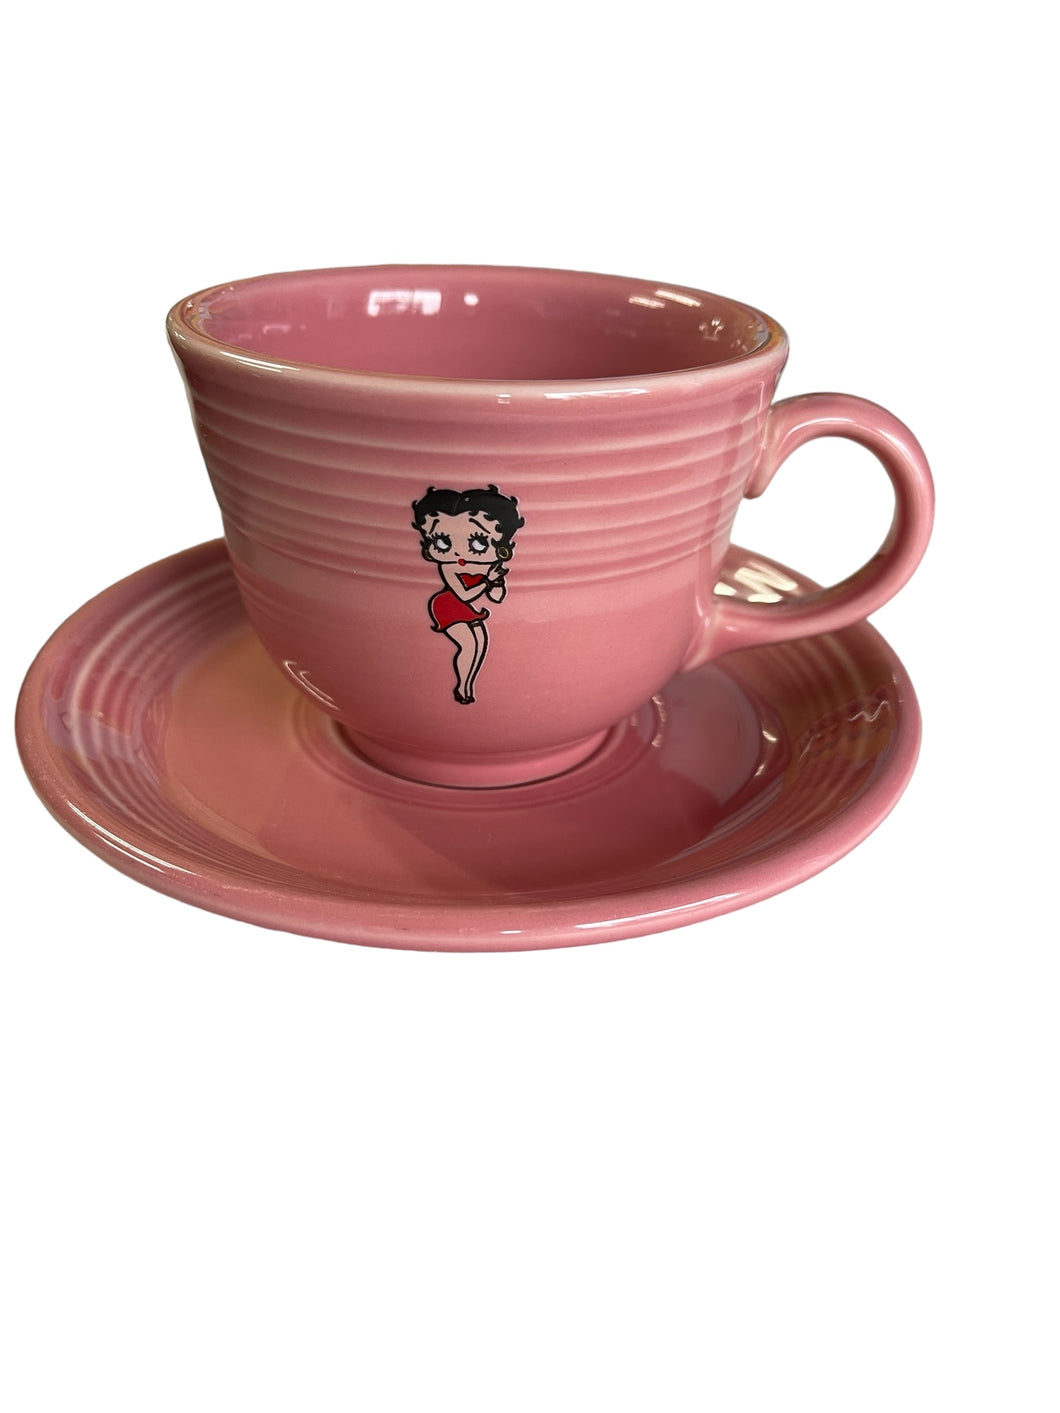 Fiesta Rose Betty Boop Tea Cup & Saucer